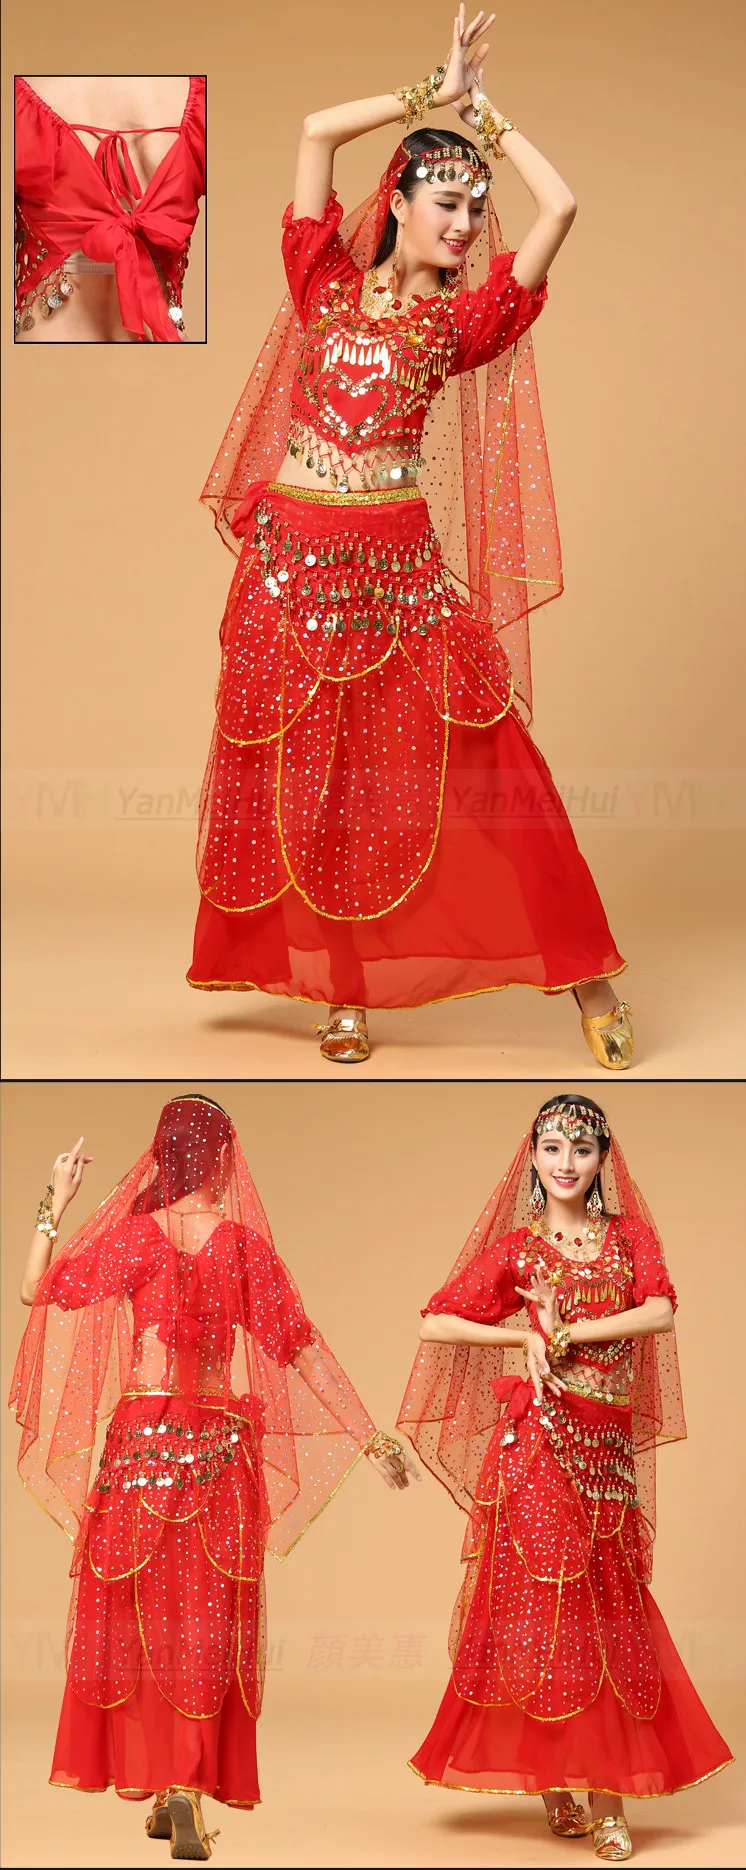 Новые женские танец живота костюм Индийский стиль одежды пикантные Болливуд танцевальные костюмы для леди 6 видов цветов 3-4-5-7pcs комплекты